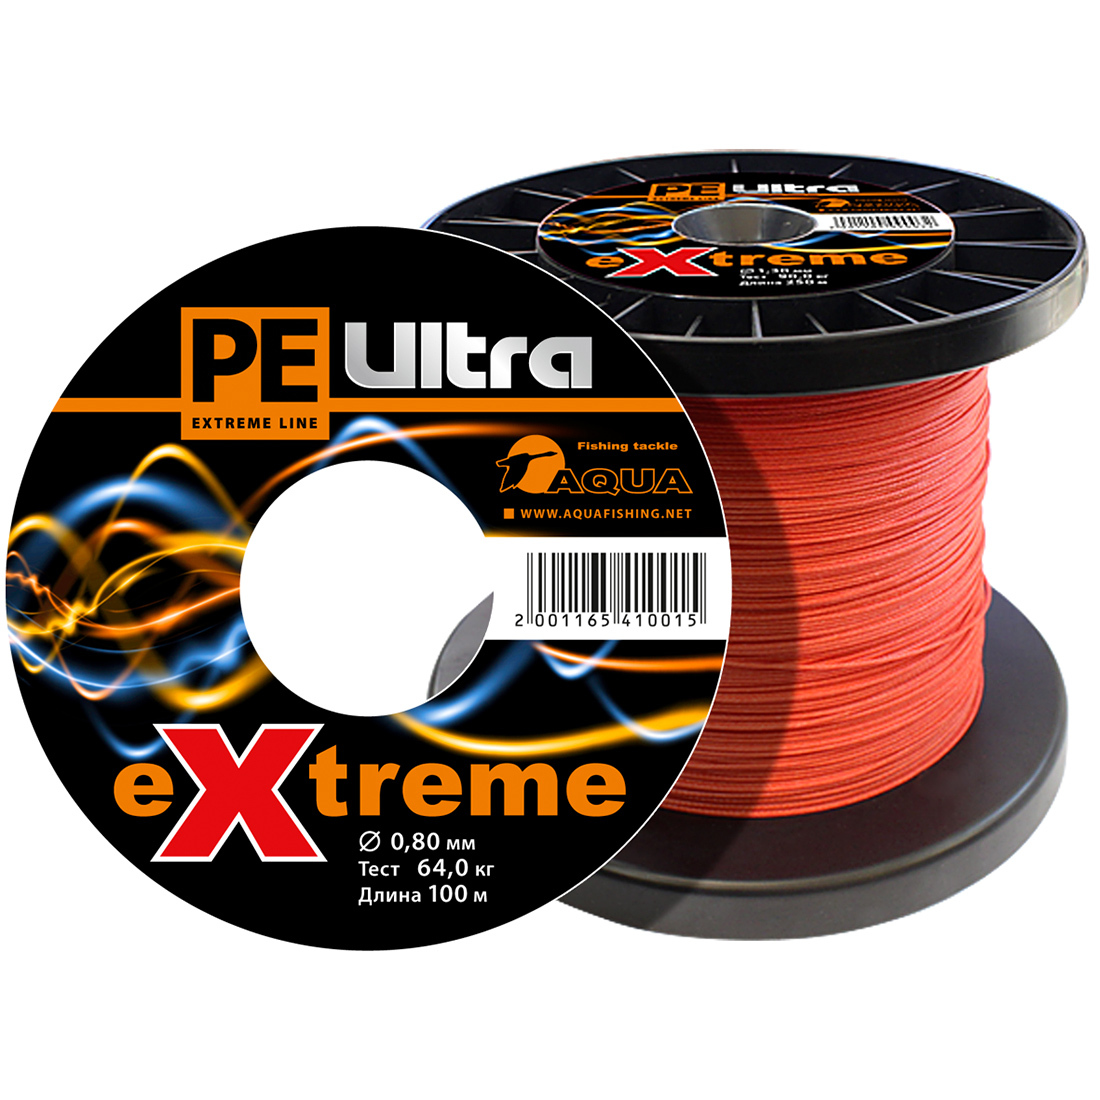 Плетеный Шнур Для Рыбалки Aqua Pe Ultra Extreme 0,80mm (Цвет Красный) 100m